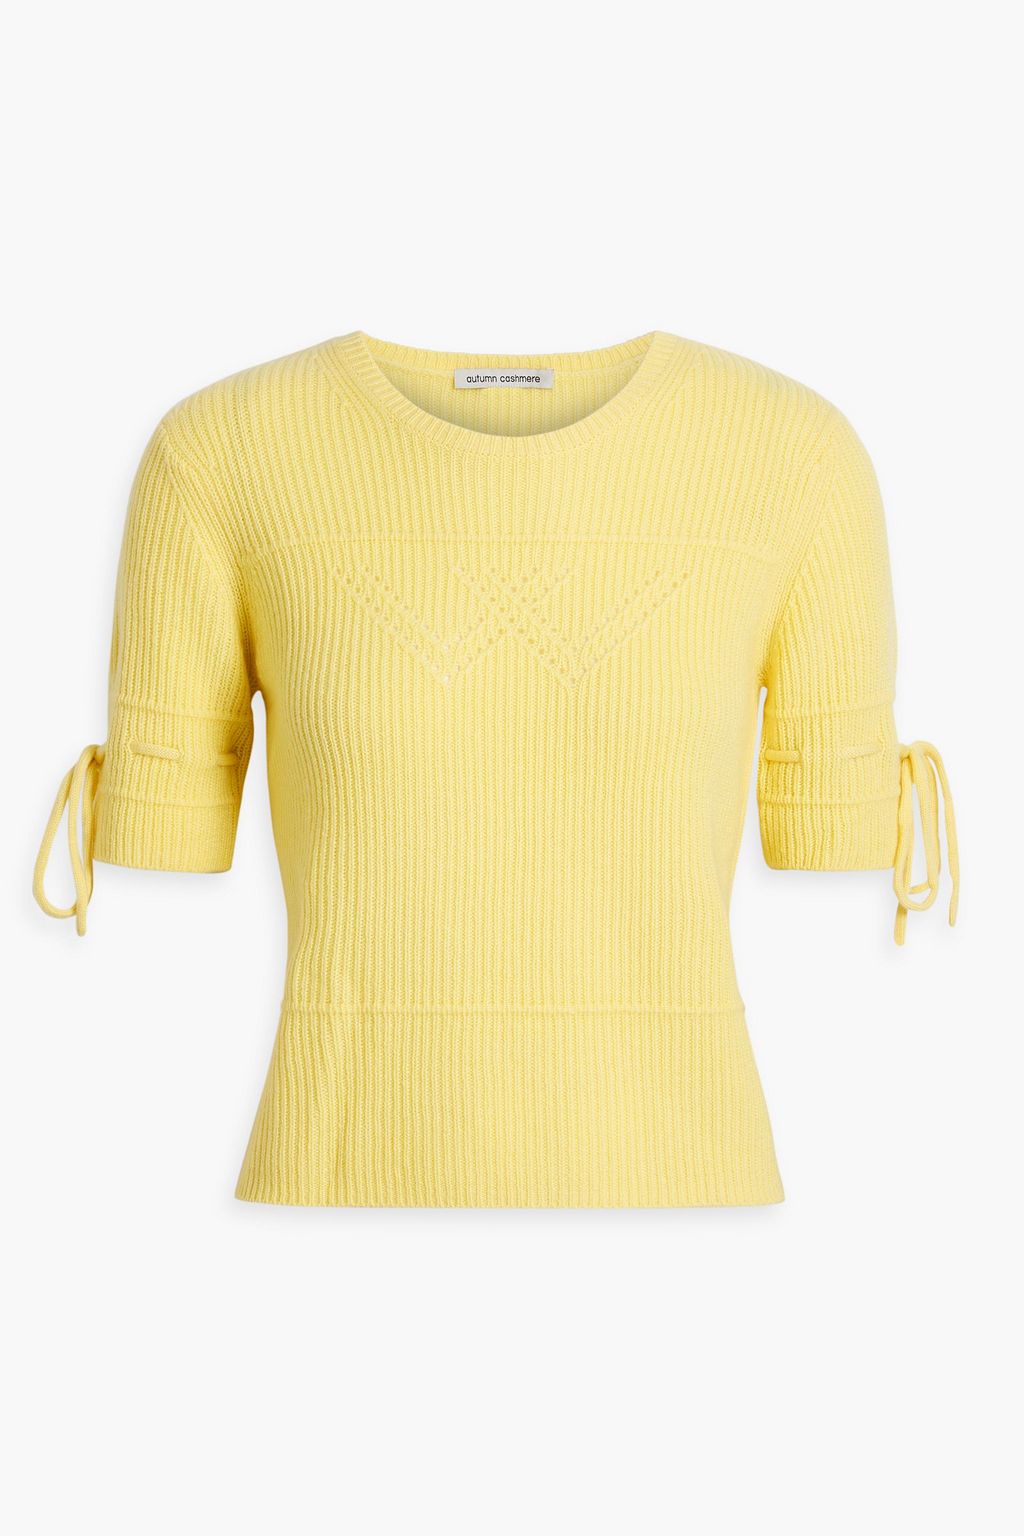 Кашемировый свитер вязки «пуэнтель» AUTUMN CASHMERE, желтый